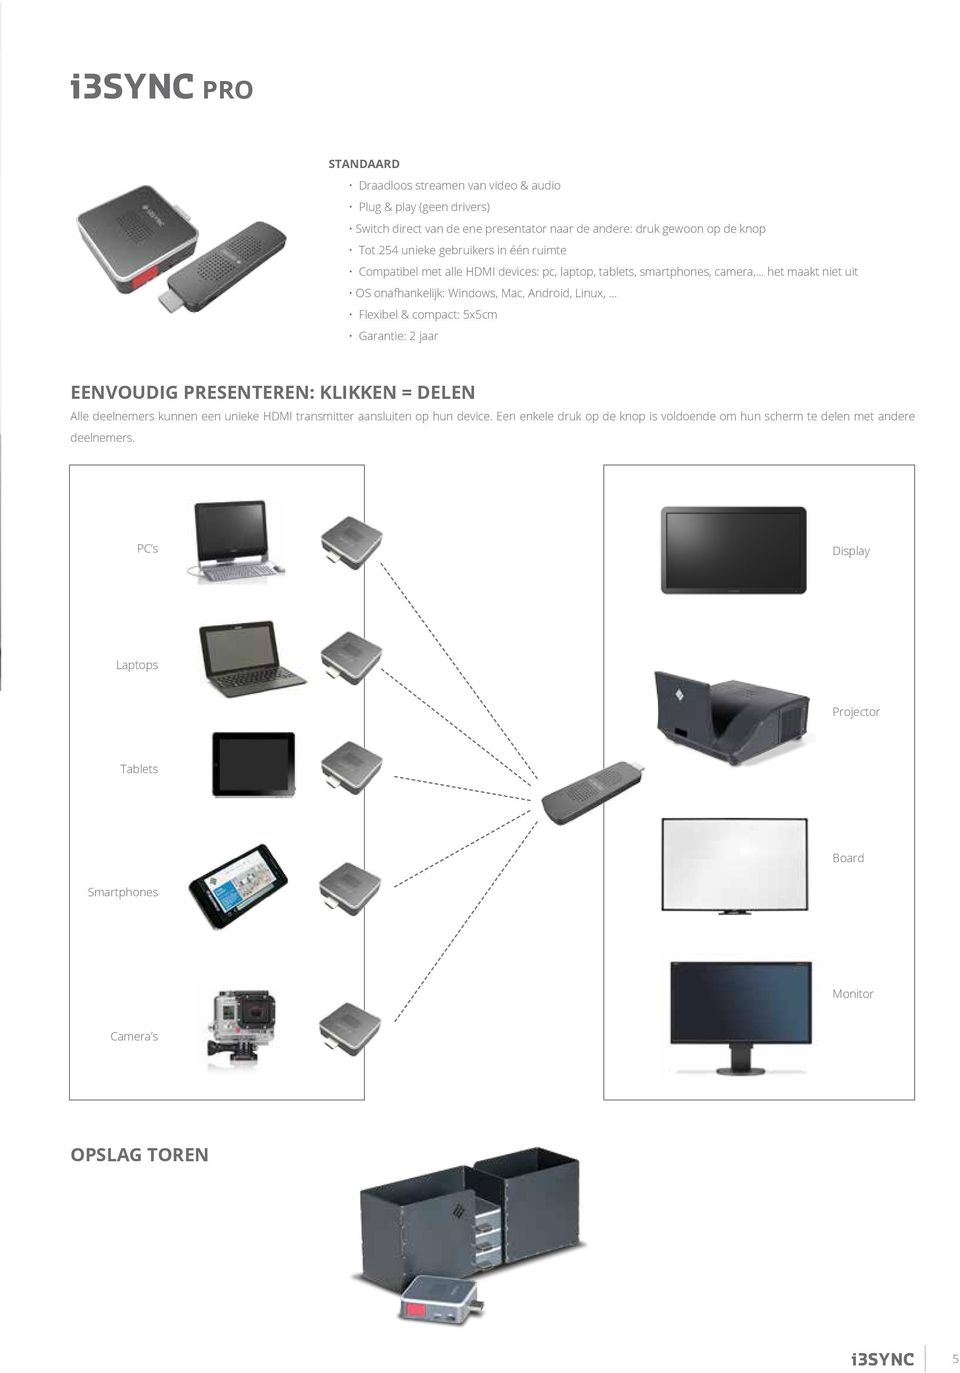 Linux, Flexibel & compact: 5x5cm Garantie: 2 jaar EENVOUDIG PRESENTEREN: KLIKKEN = DELEN Alle deelnemers kunnen een unieke HDMI transmitter aansluiten op hun device.